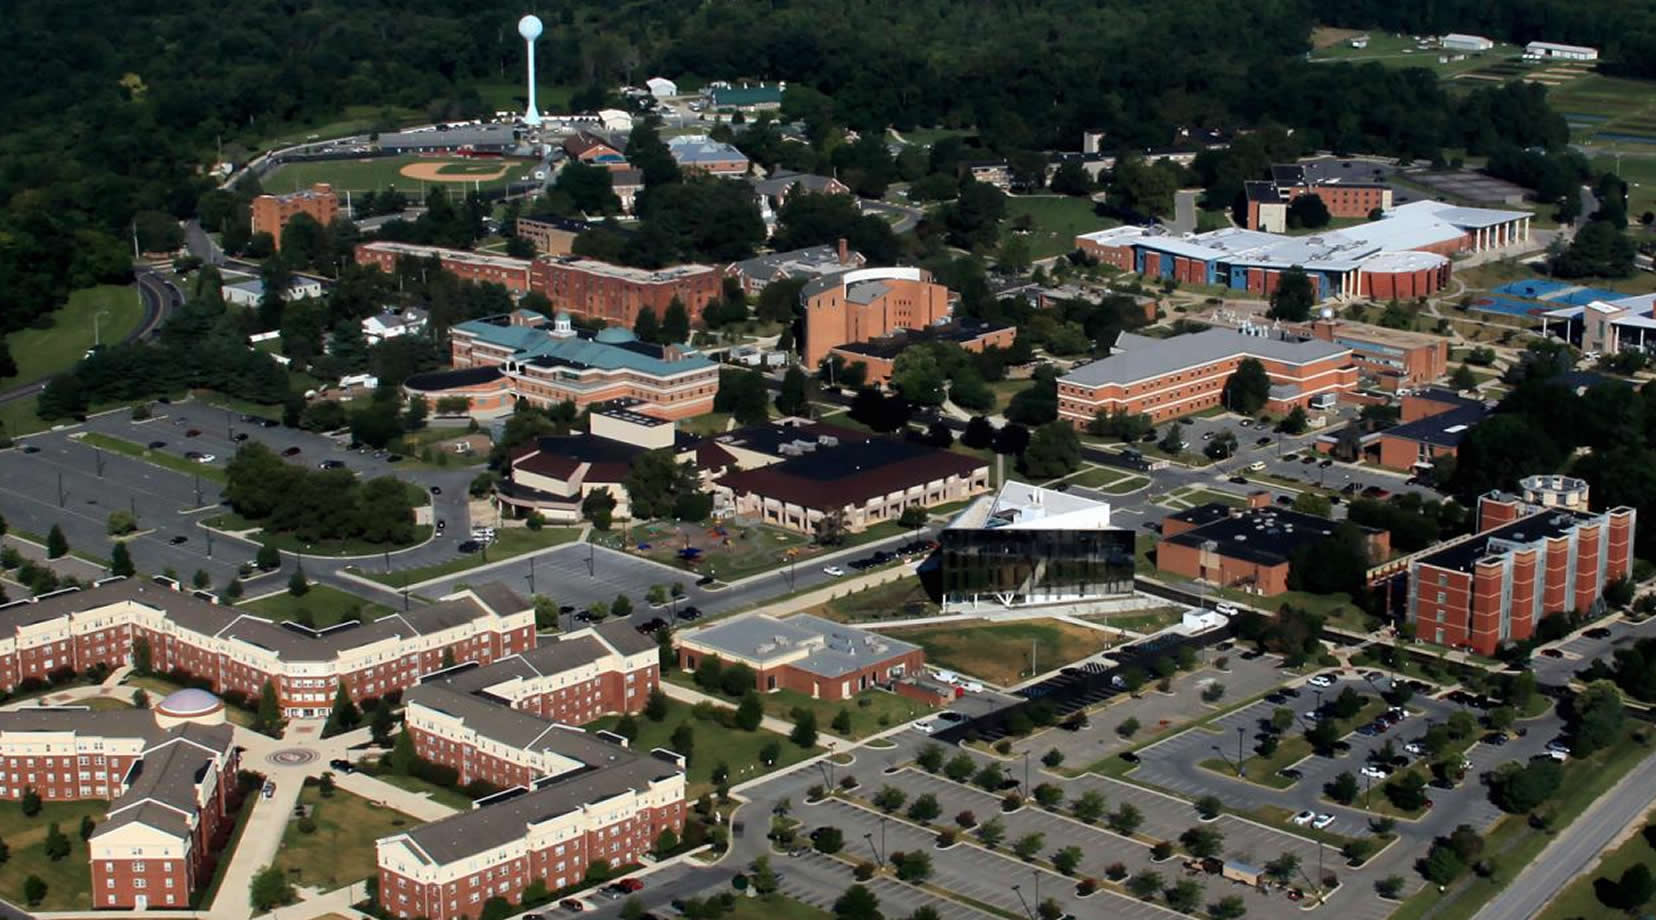 DSU Campus in Dover, DE